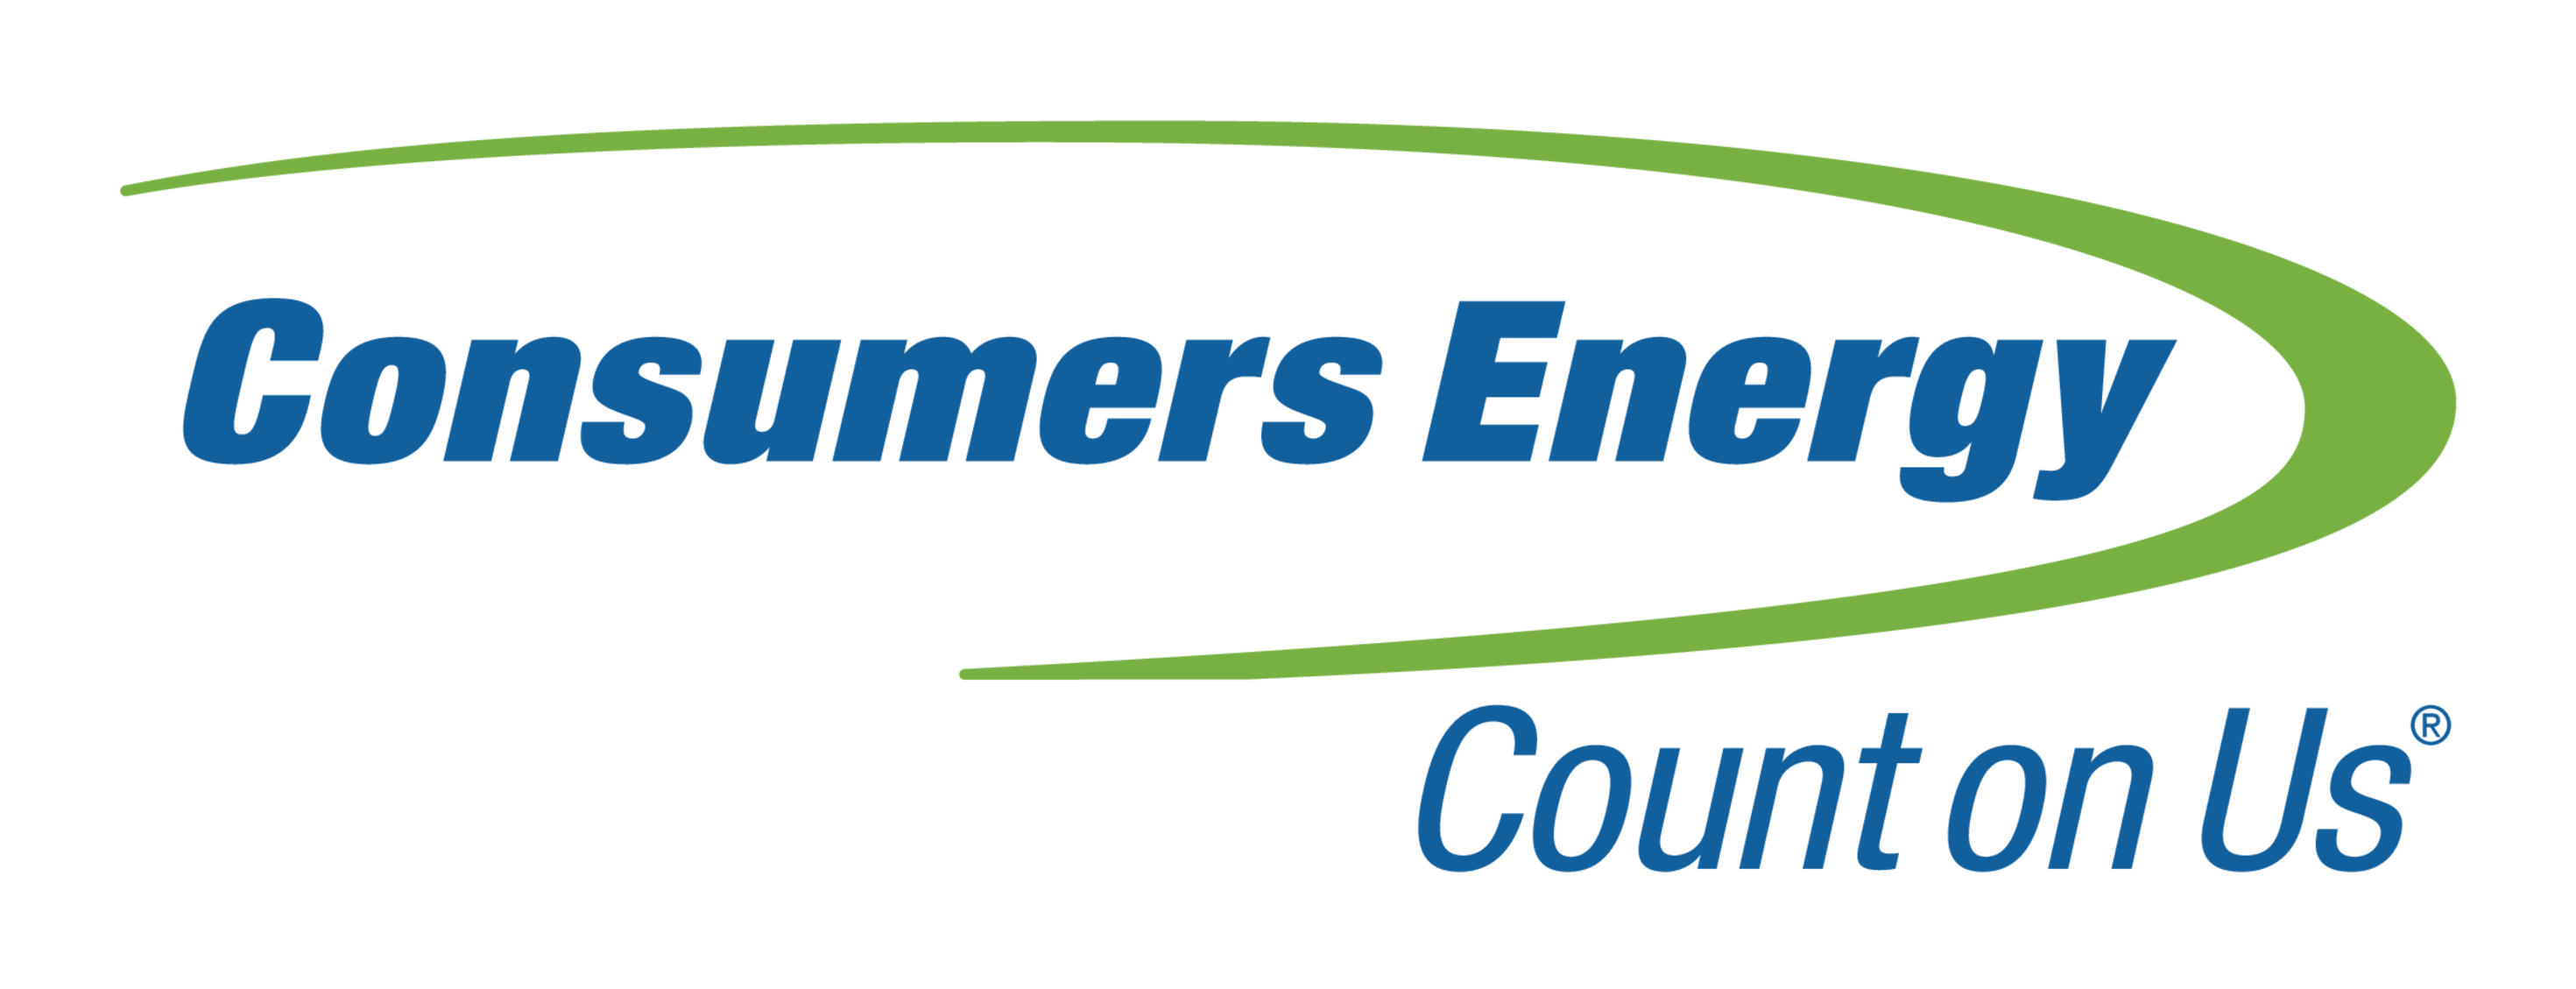 Consumers Energy logo